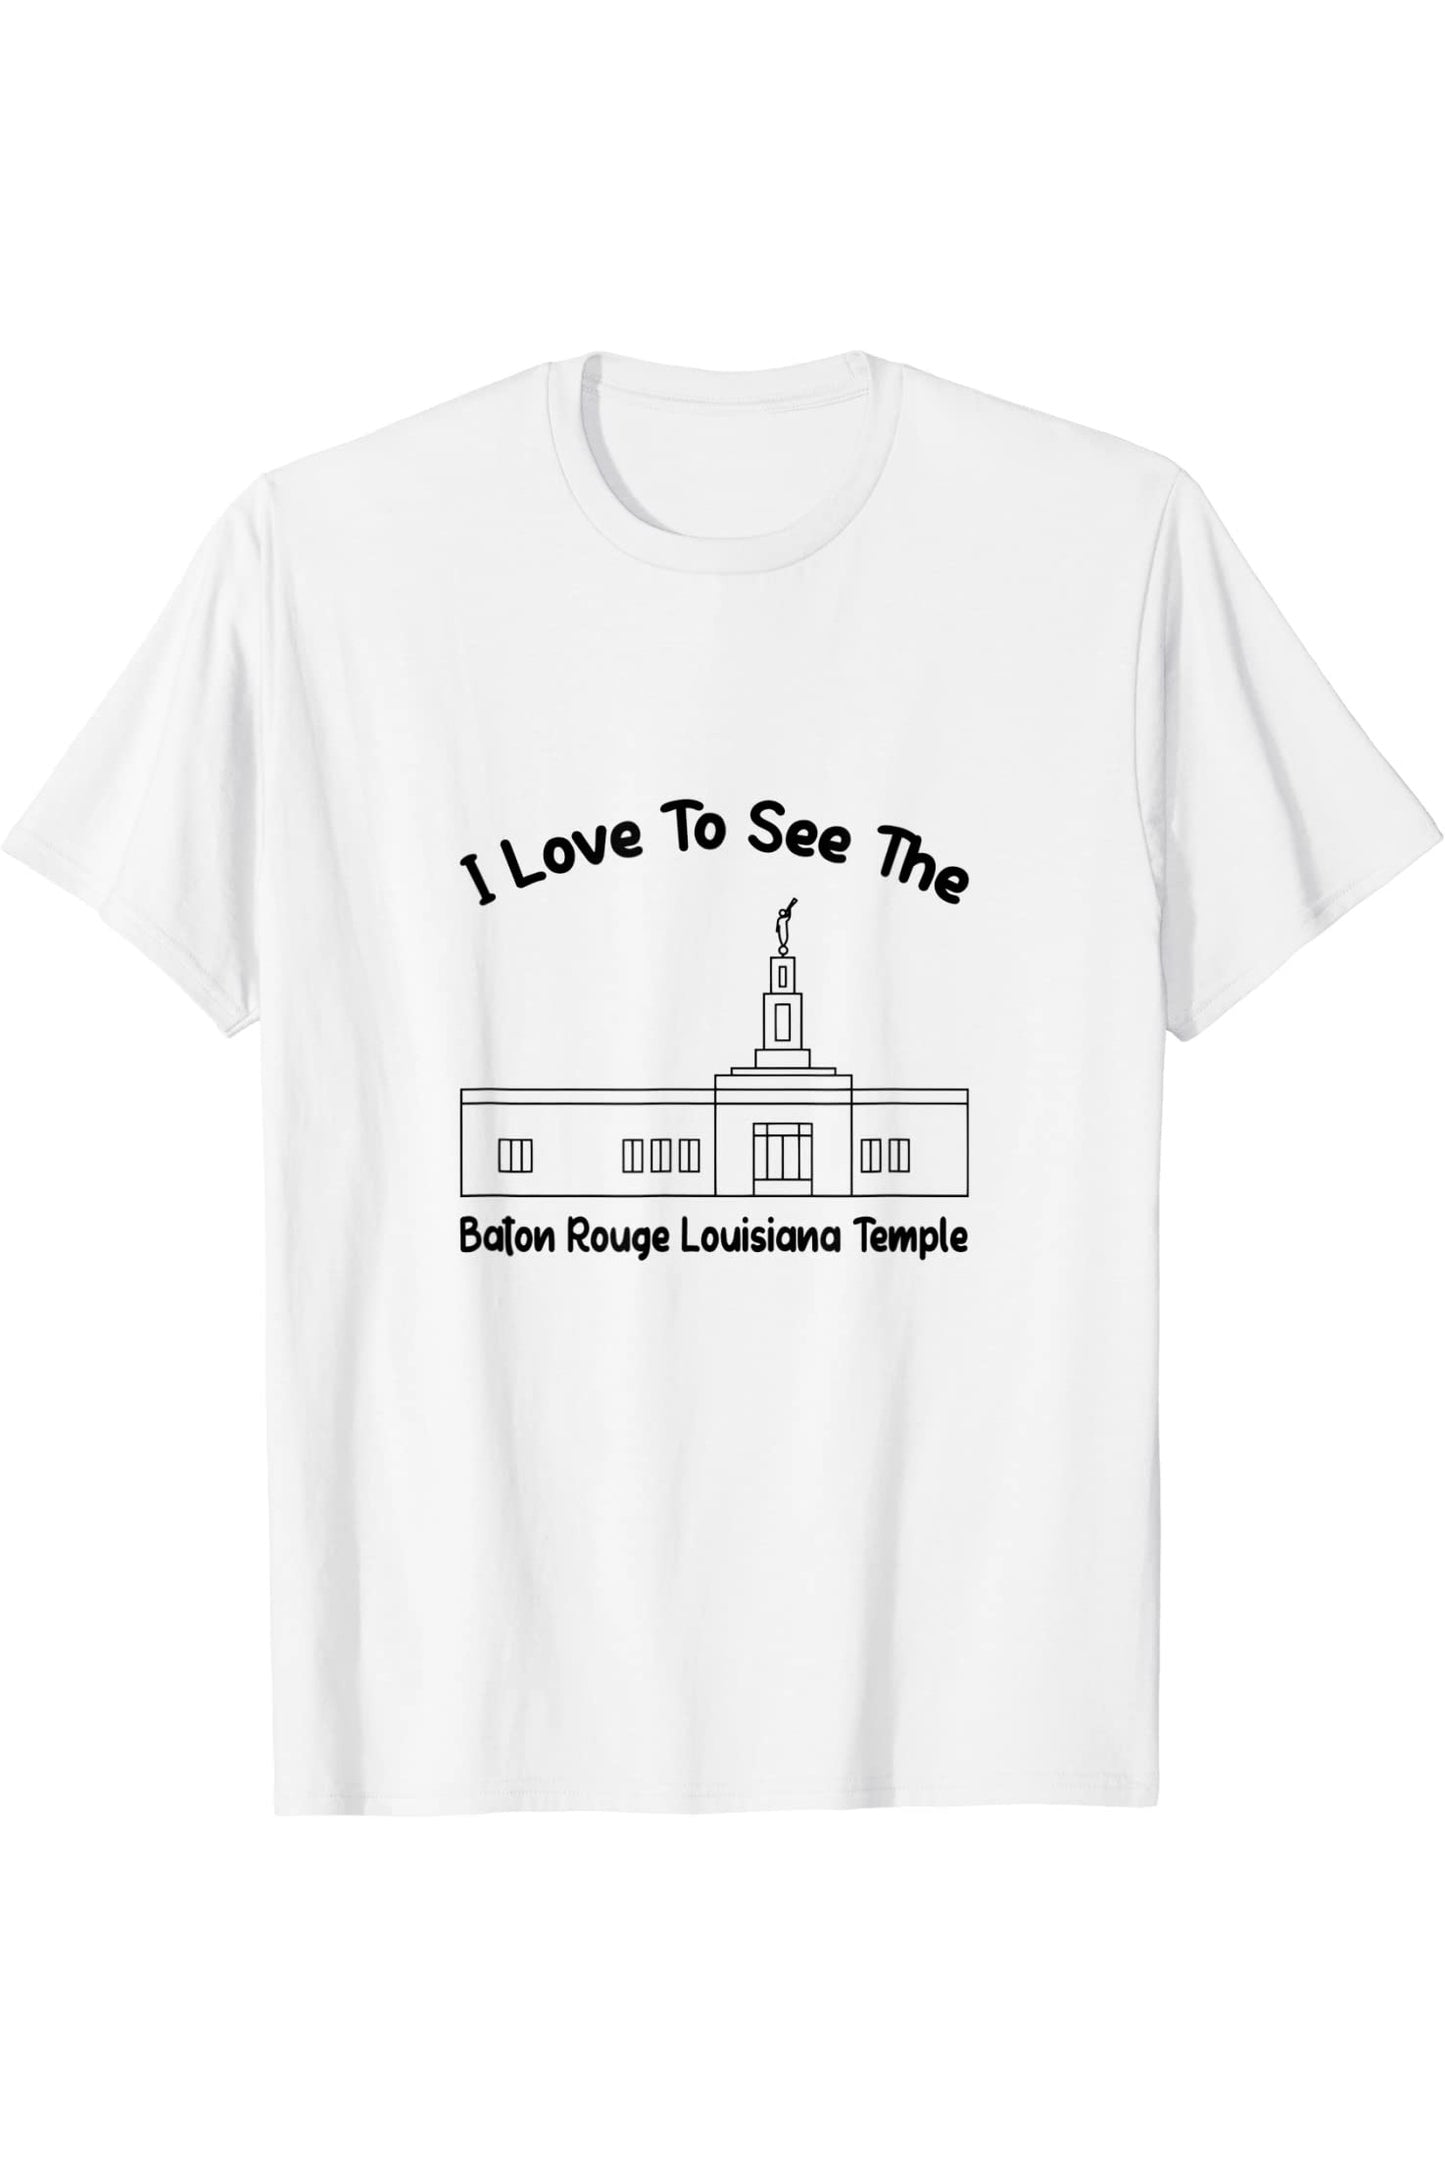 Baton Rouge Louisiana Temple T-Shirt - Primary Style (English) US